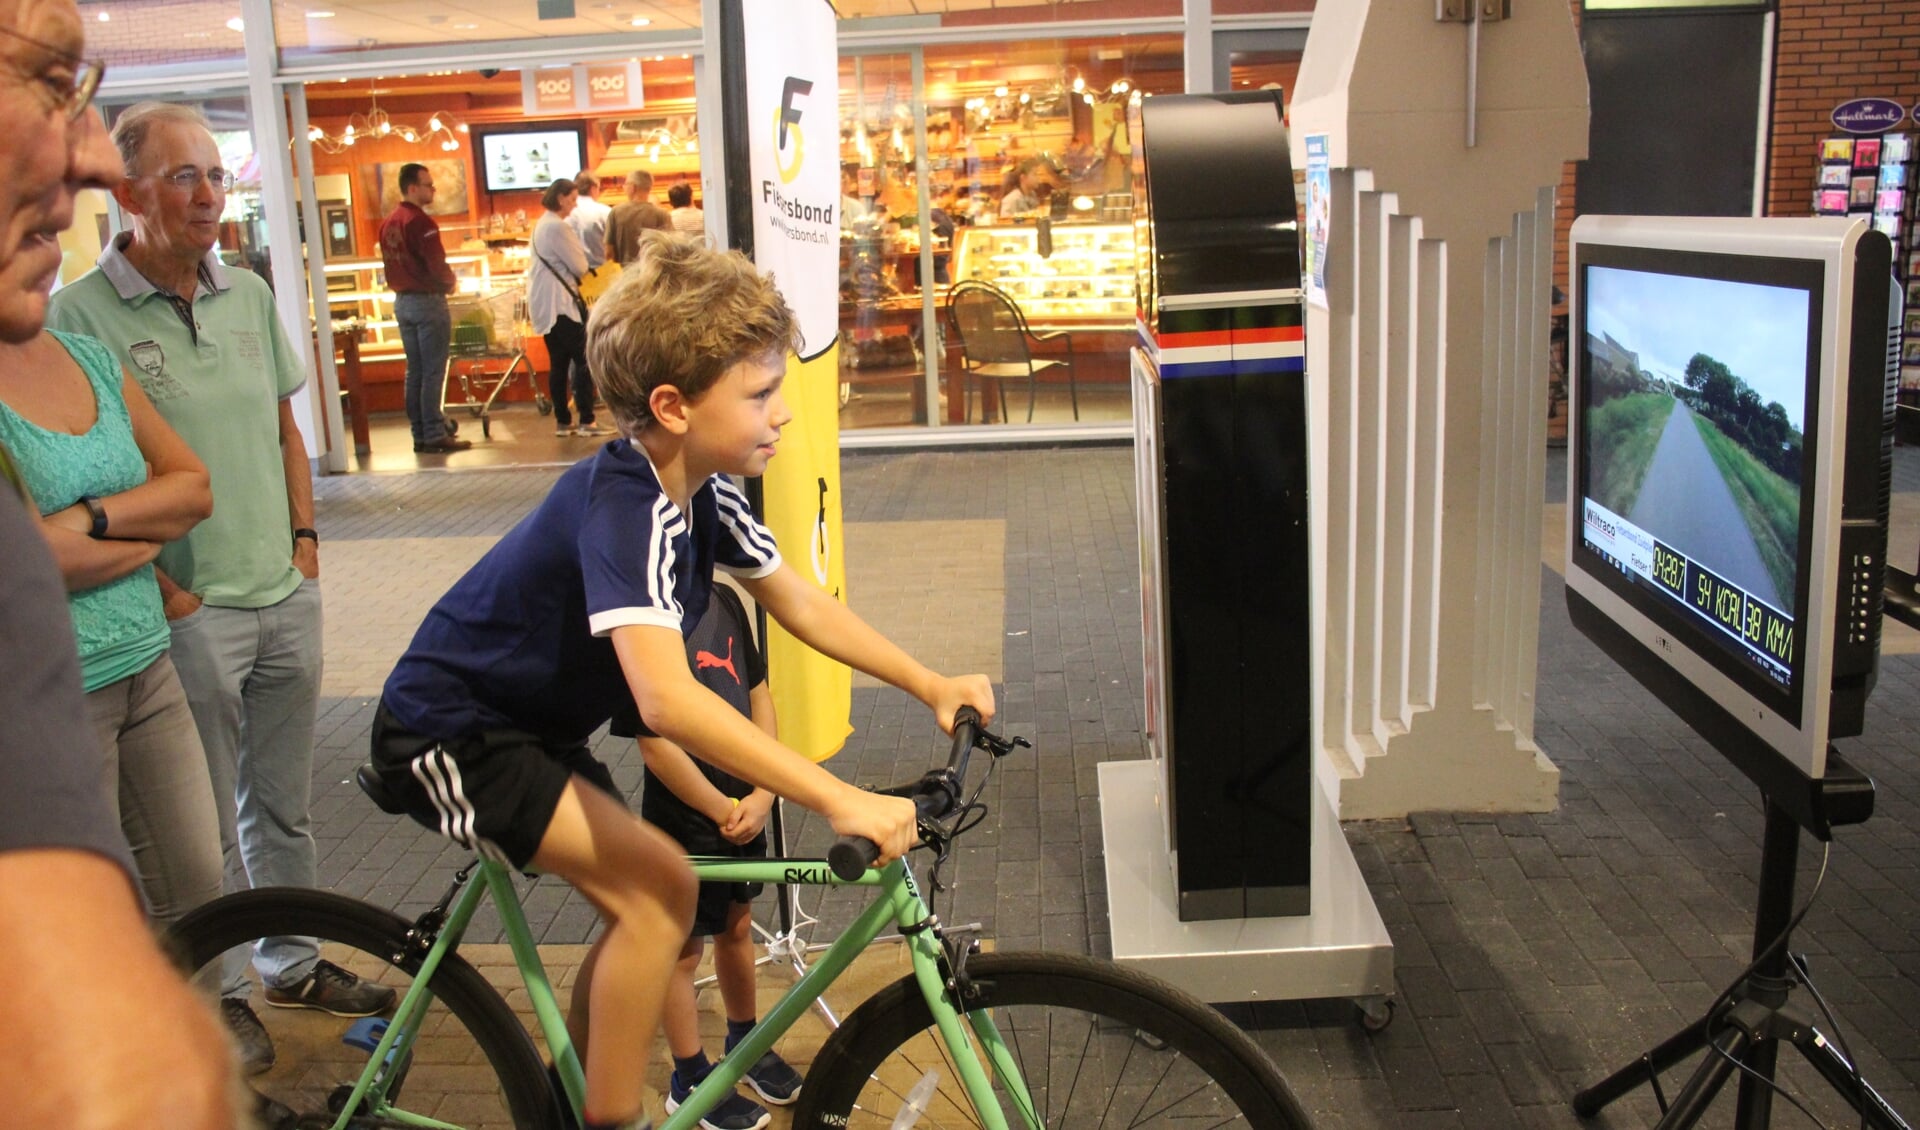 Stilstaand een stukje door Nieuwerkerk fietsen kon met de simulator van Fietsersbond Zuidplas. (foto en tekst: Erik van Leeuwen)